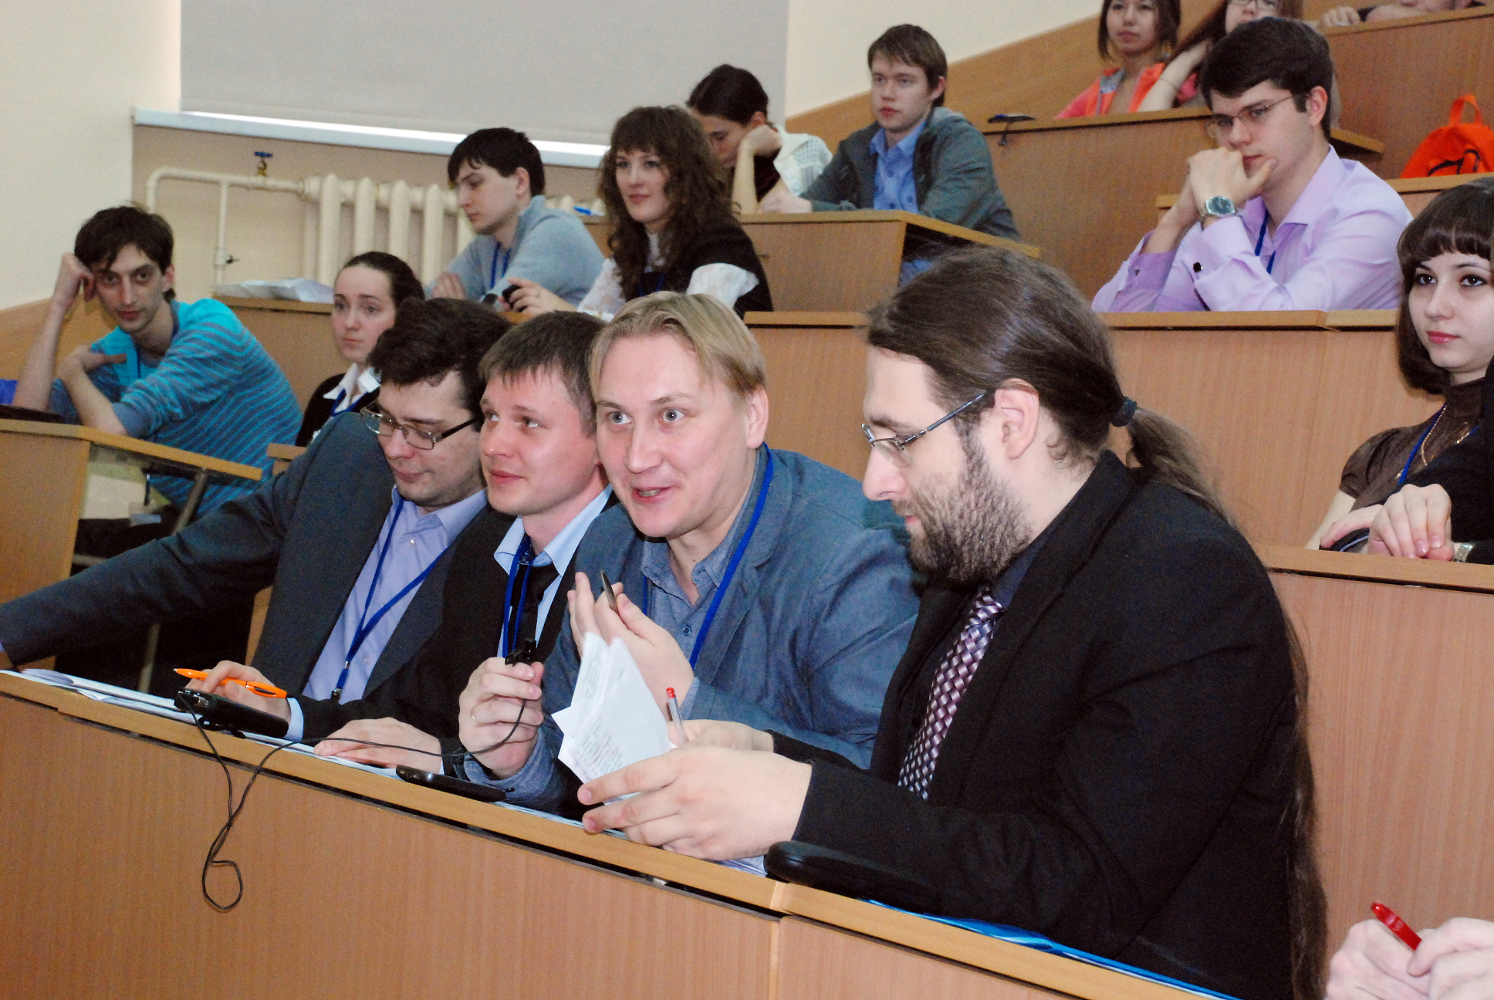 15 и 16 апреля в ТУСУРе проходит всероссийский конкурс-конференция студентов и аспирантов по информационной безопасности SIBINFO – 2014